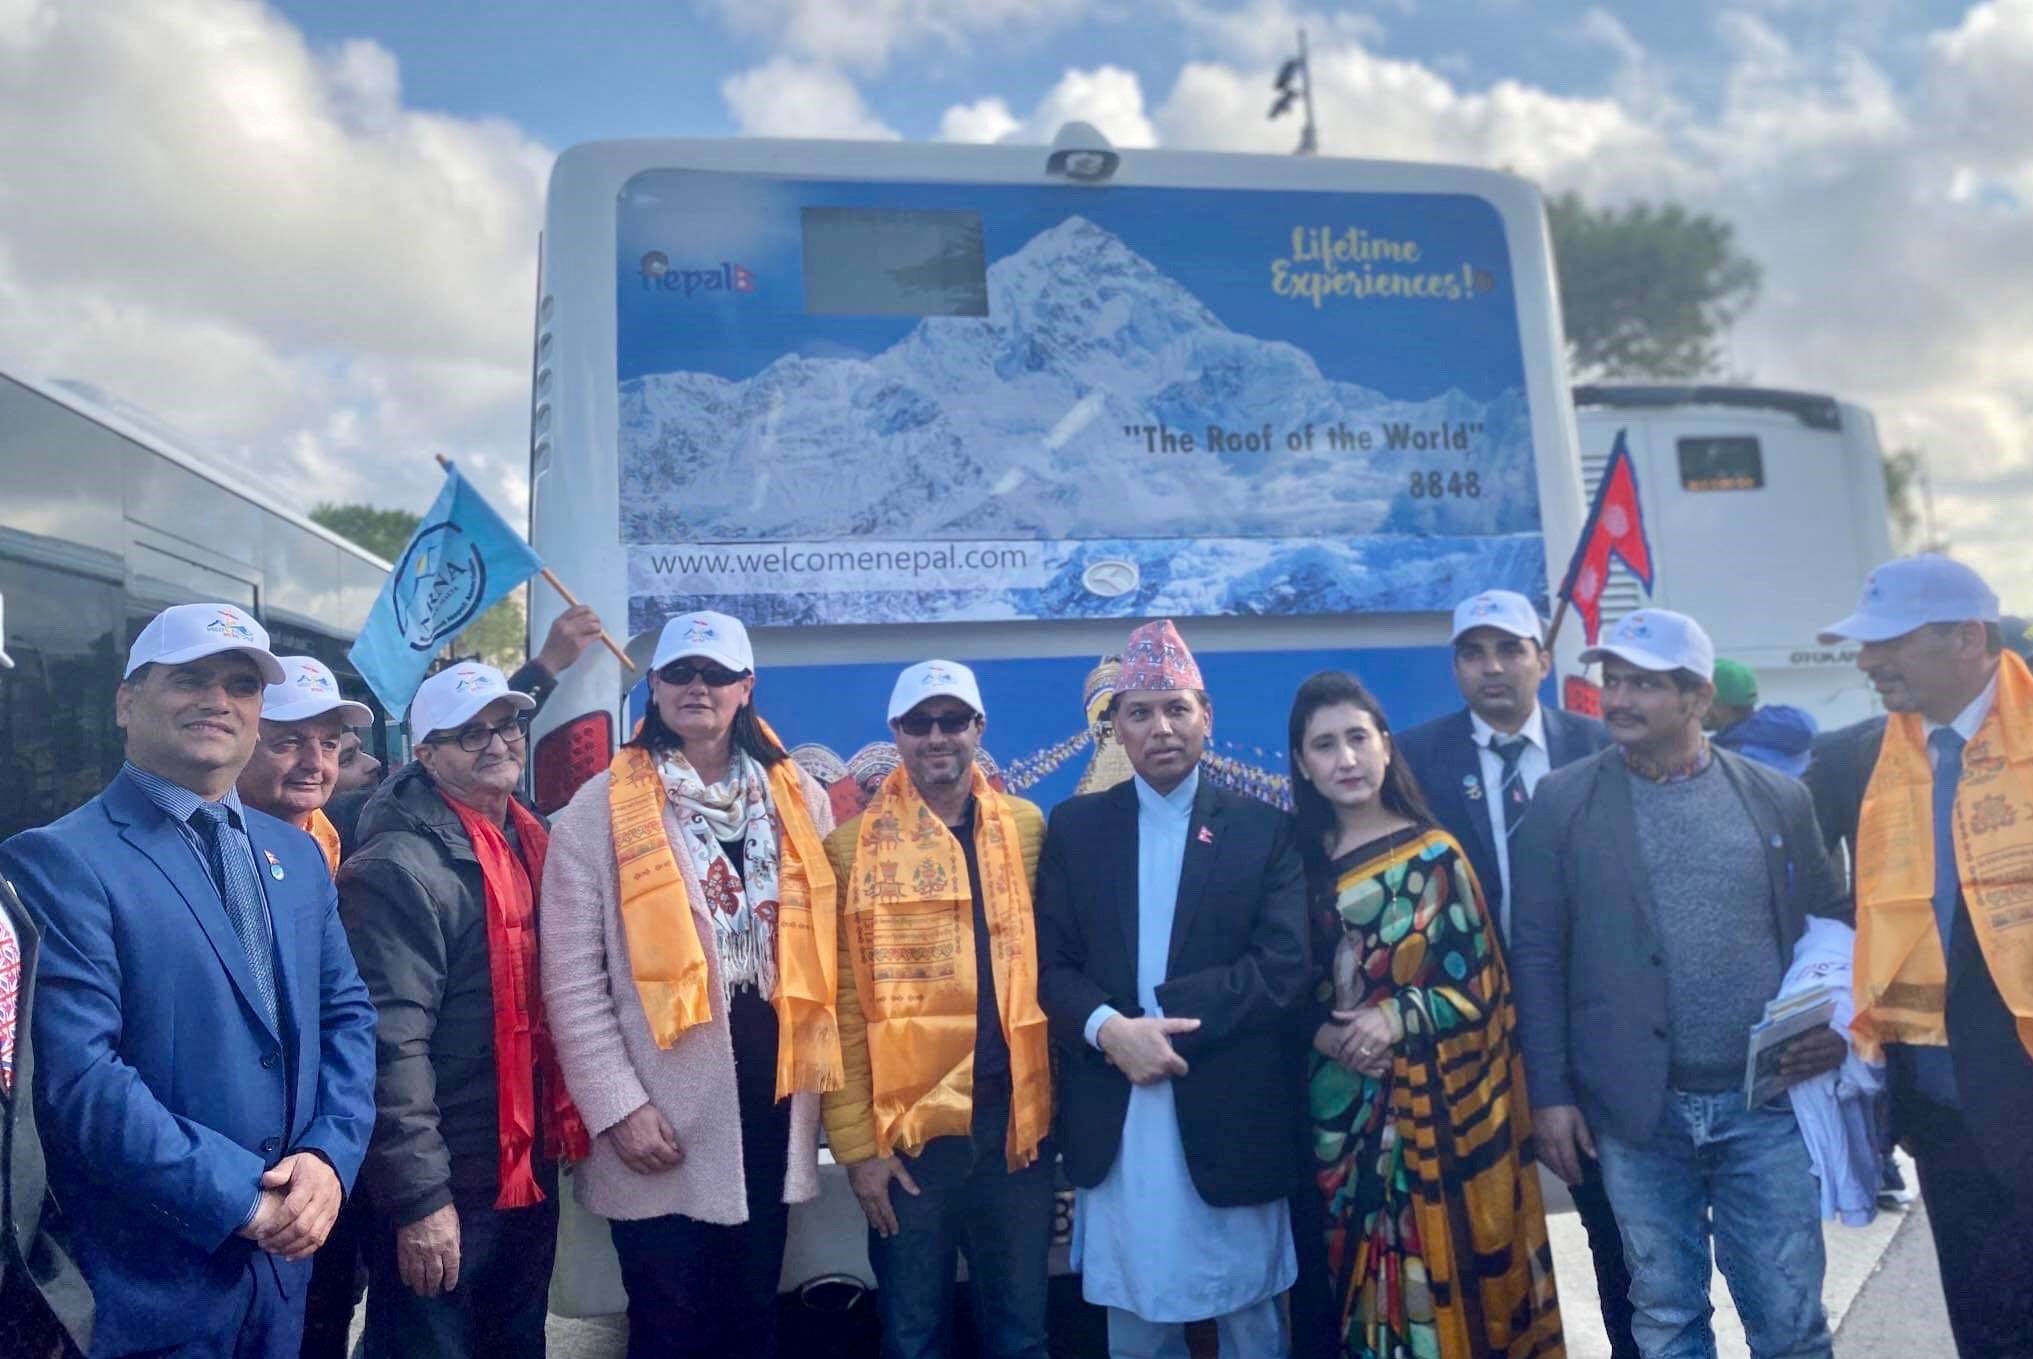 सगरमाथा र बुद्धको पोष्टर प्रदर्शनी गर्दै माल्टामा नेपाल भ्रमण वर्ष शुभारम्भ